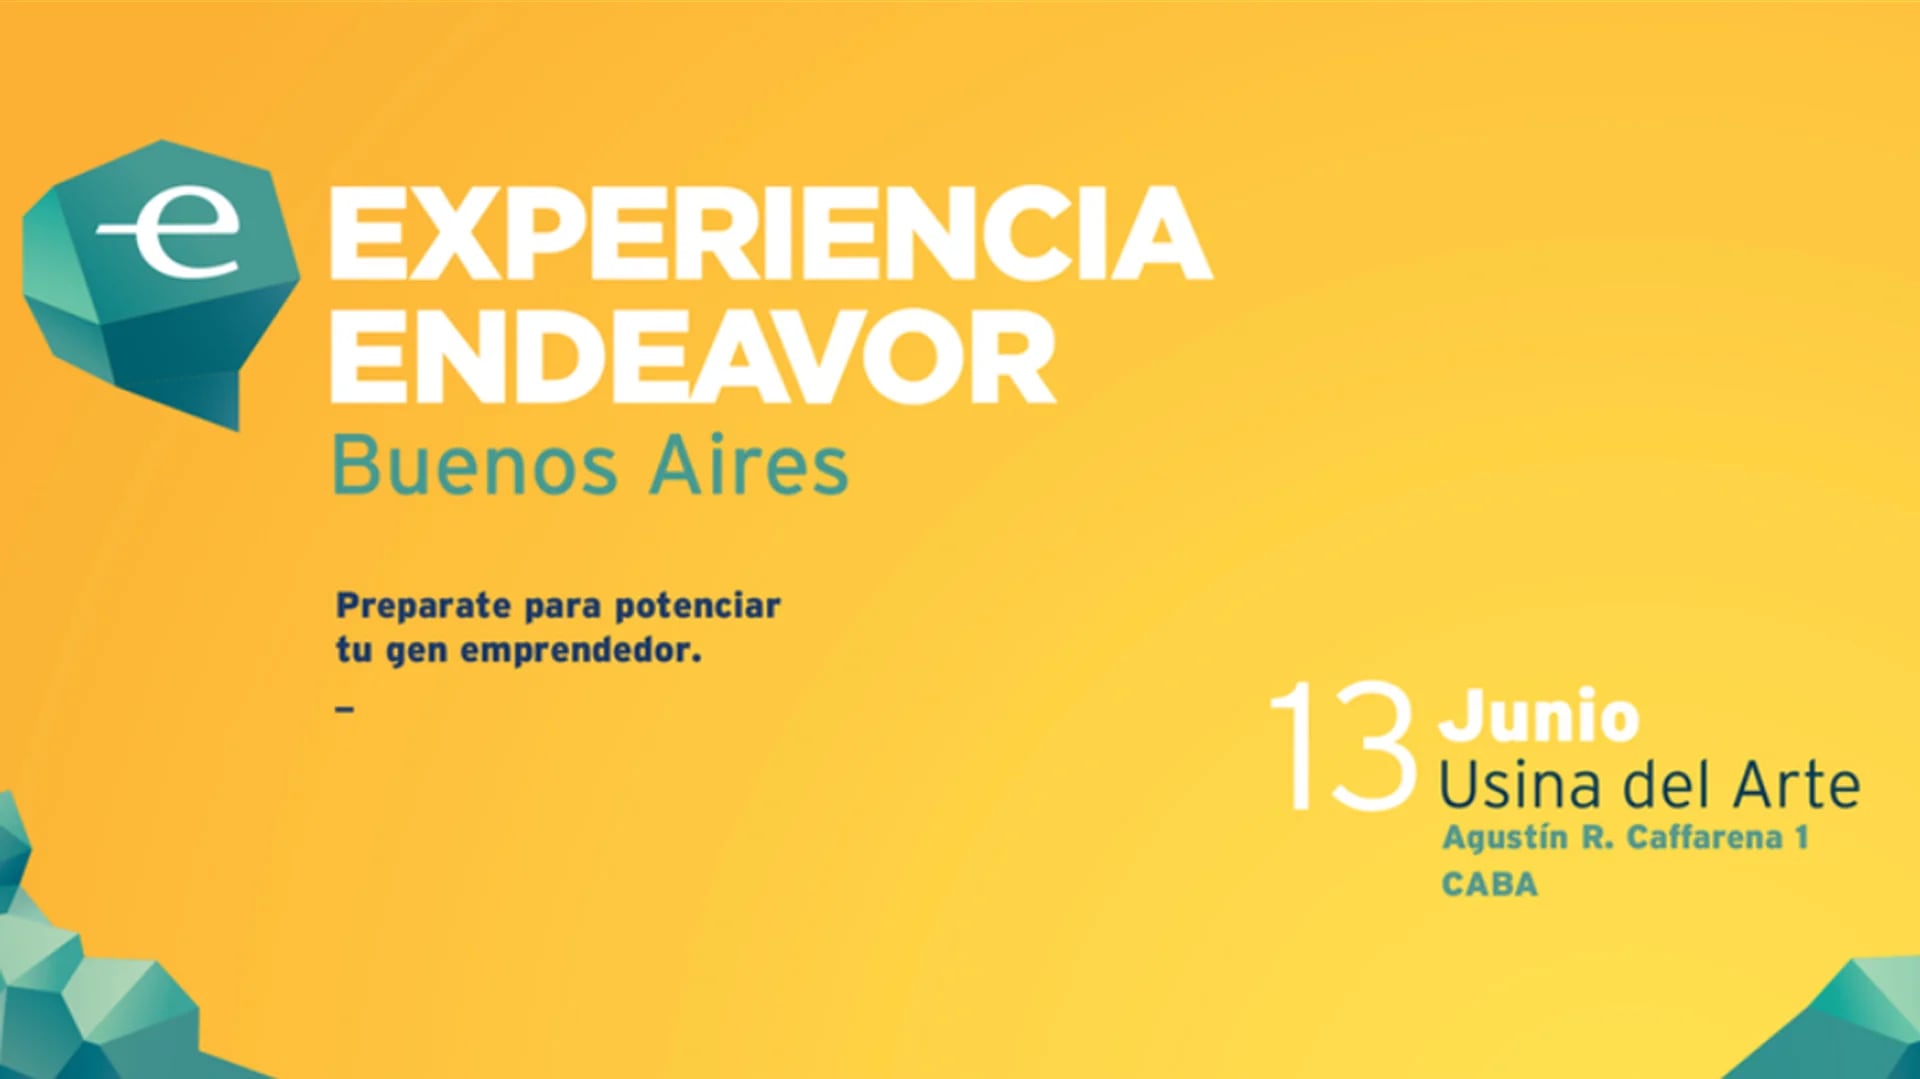 La Experiencia Endeavor 2017 llega a Buenos Aires con más conferencias